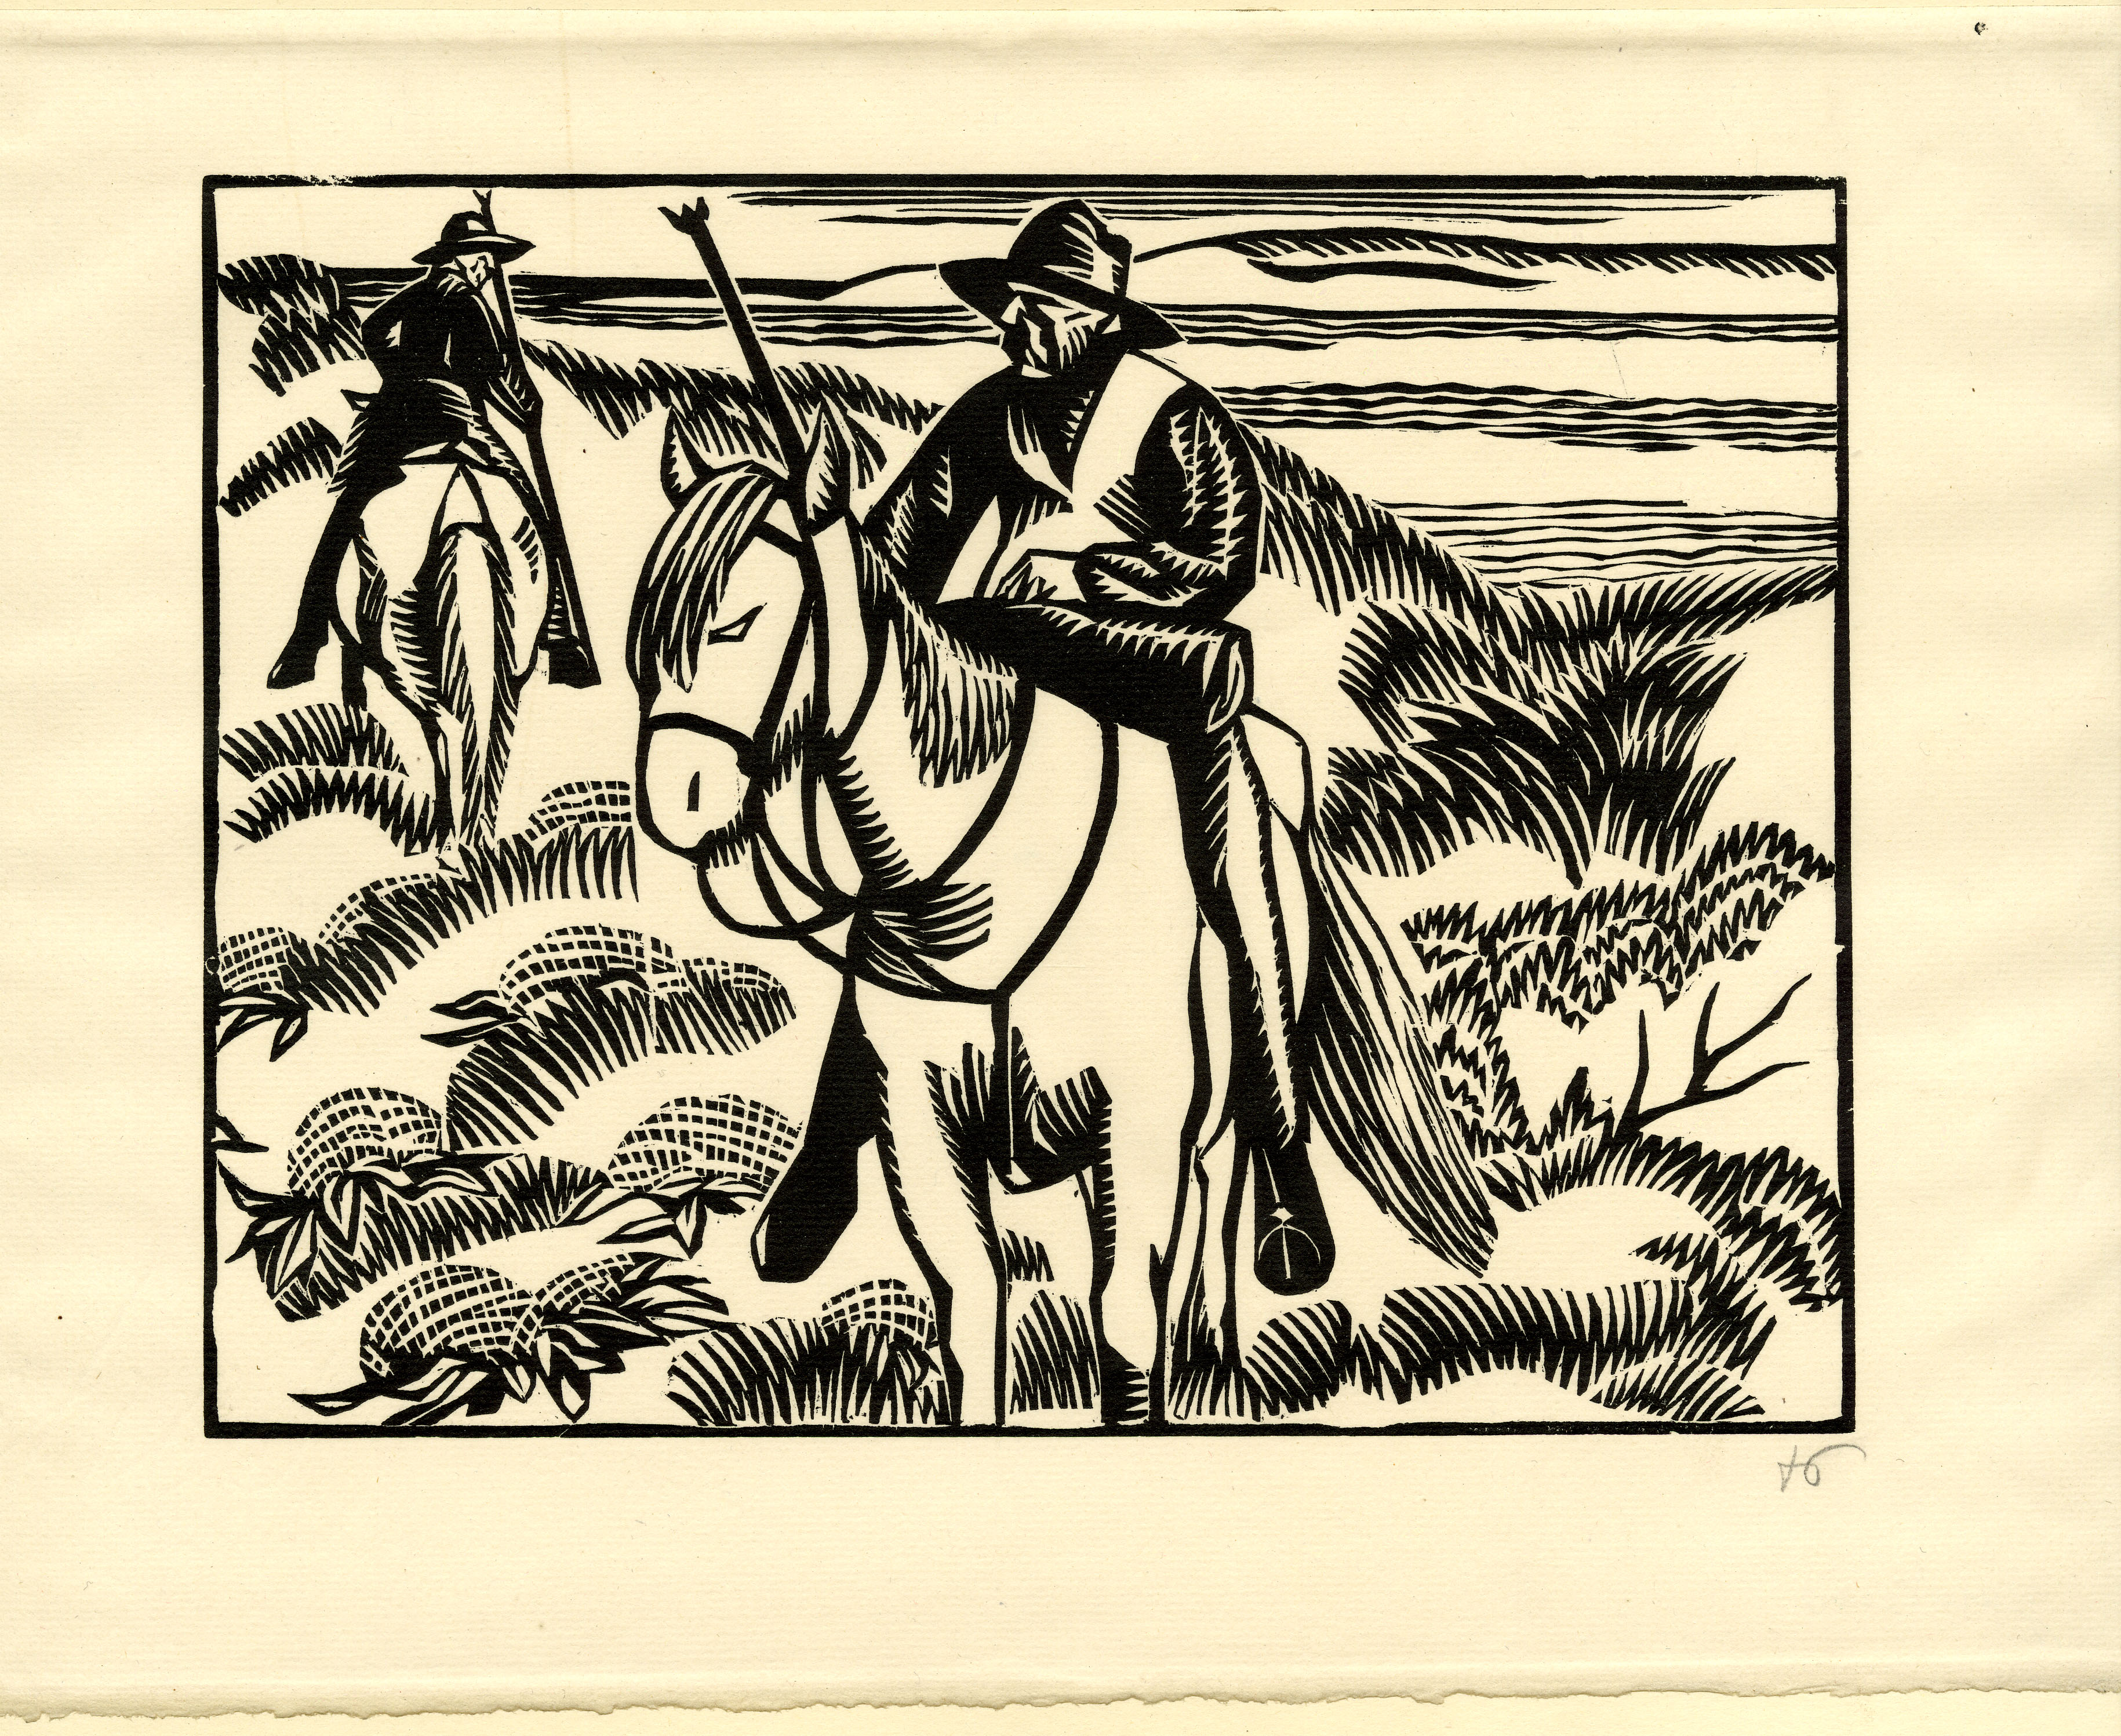 Man on horseback in landscape (1922)